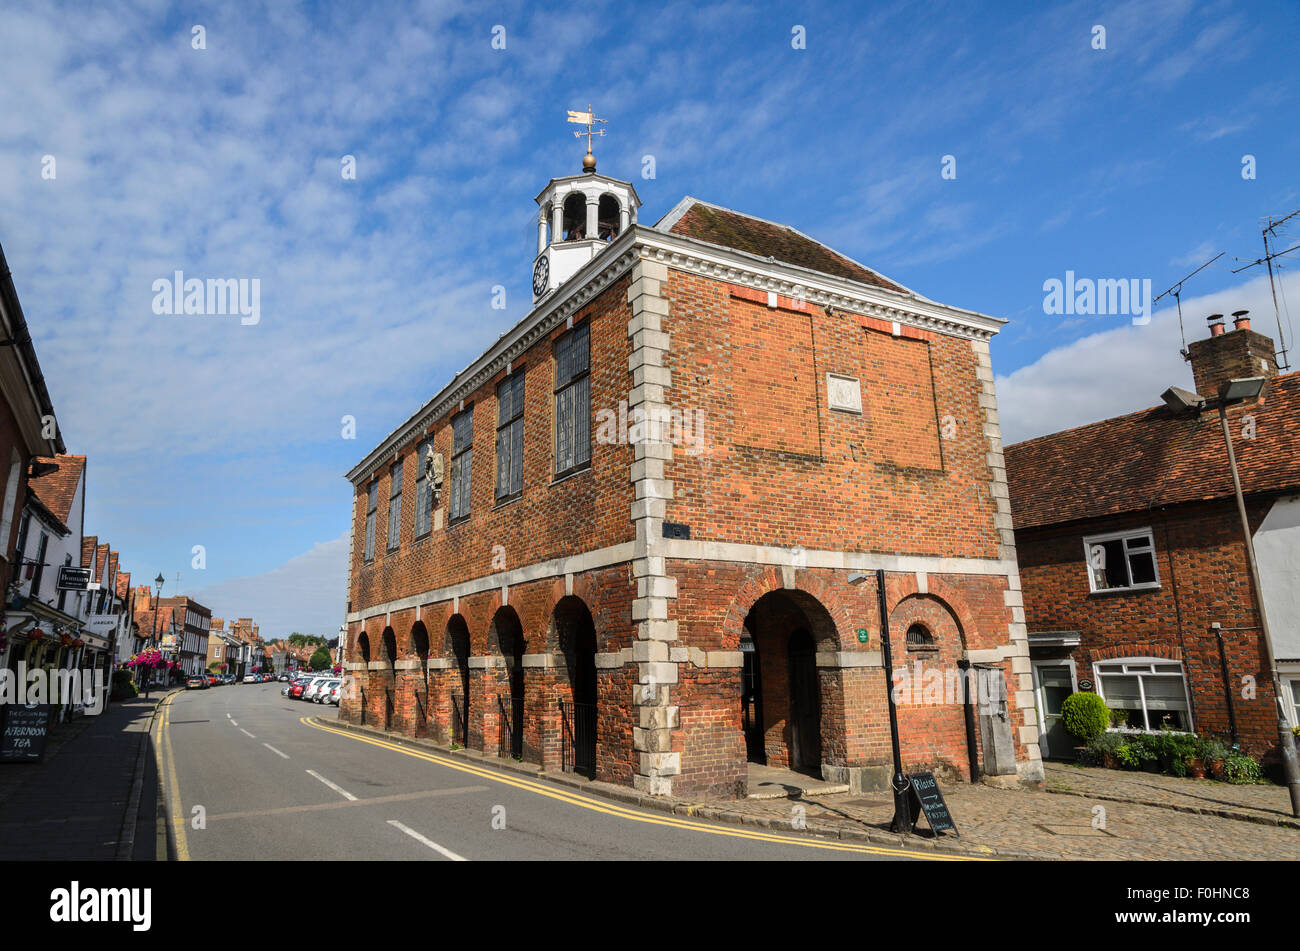 The Market Hall, Old Amersham, Buckinghamshire, England UK. Stock Photo